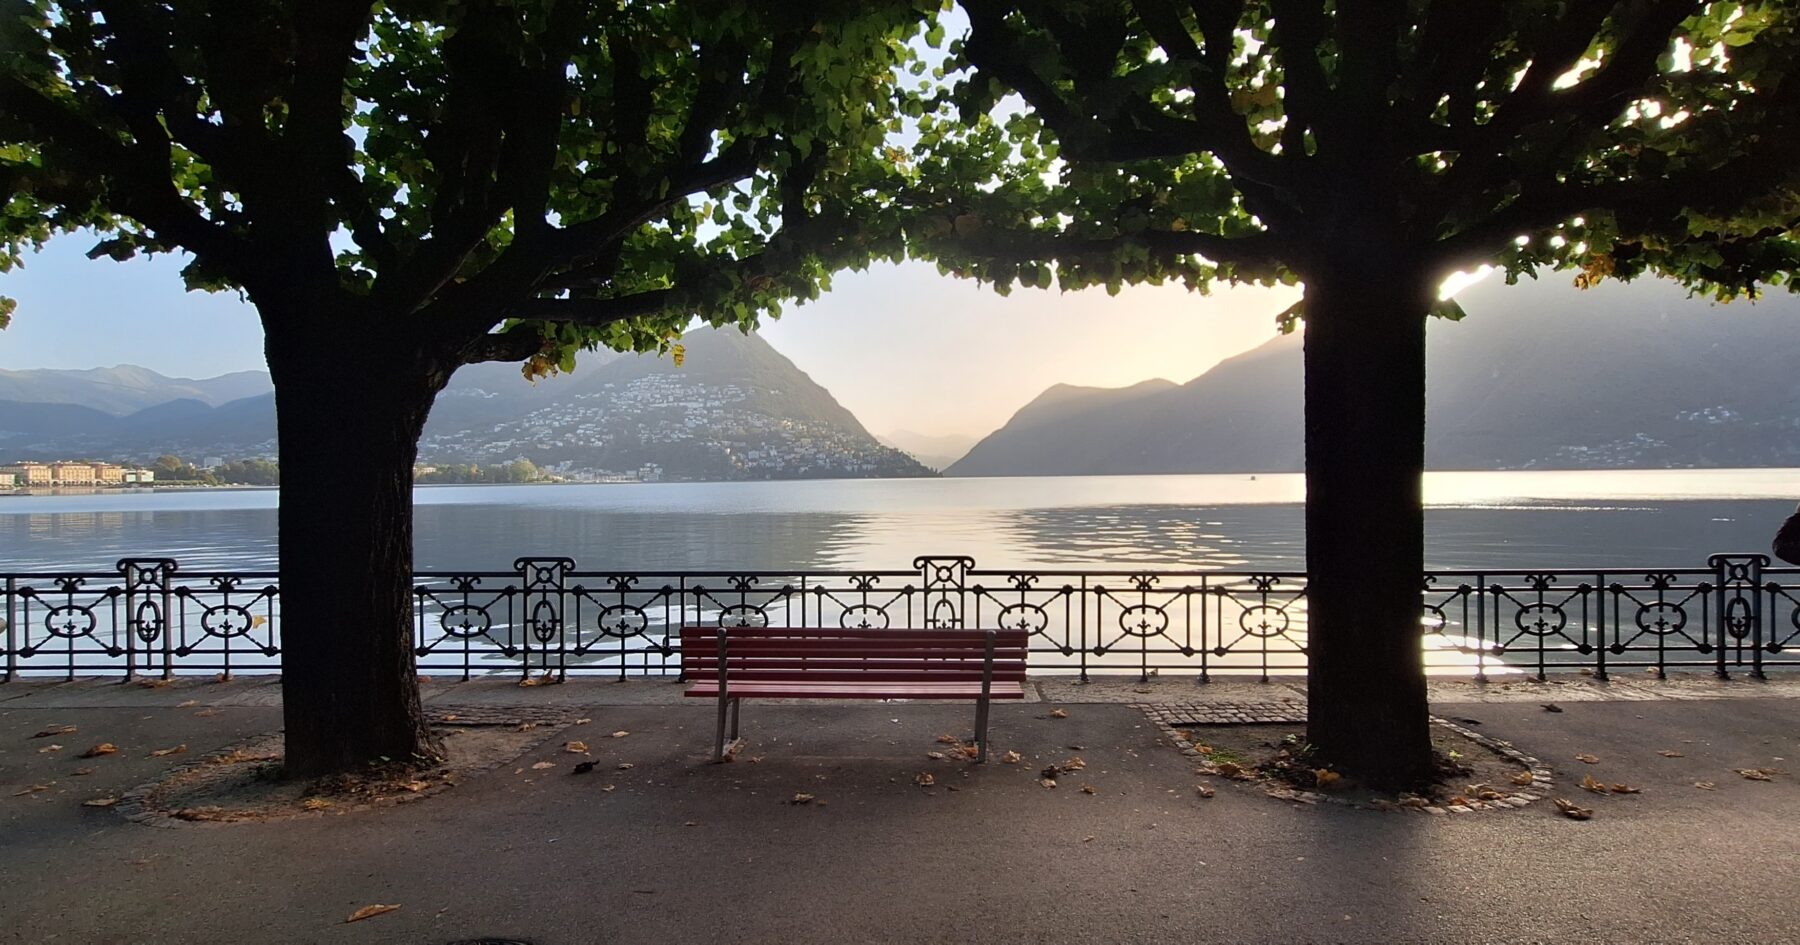 Het meer van Lugano waar de trektocht langs ging